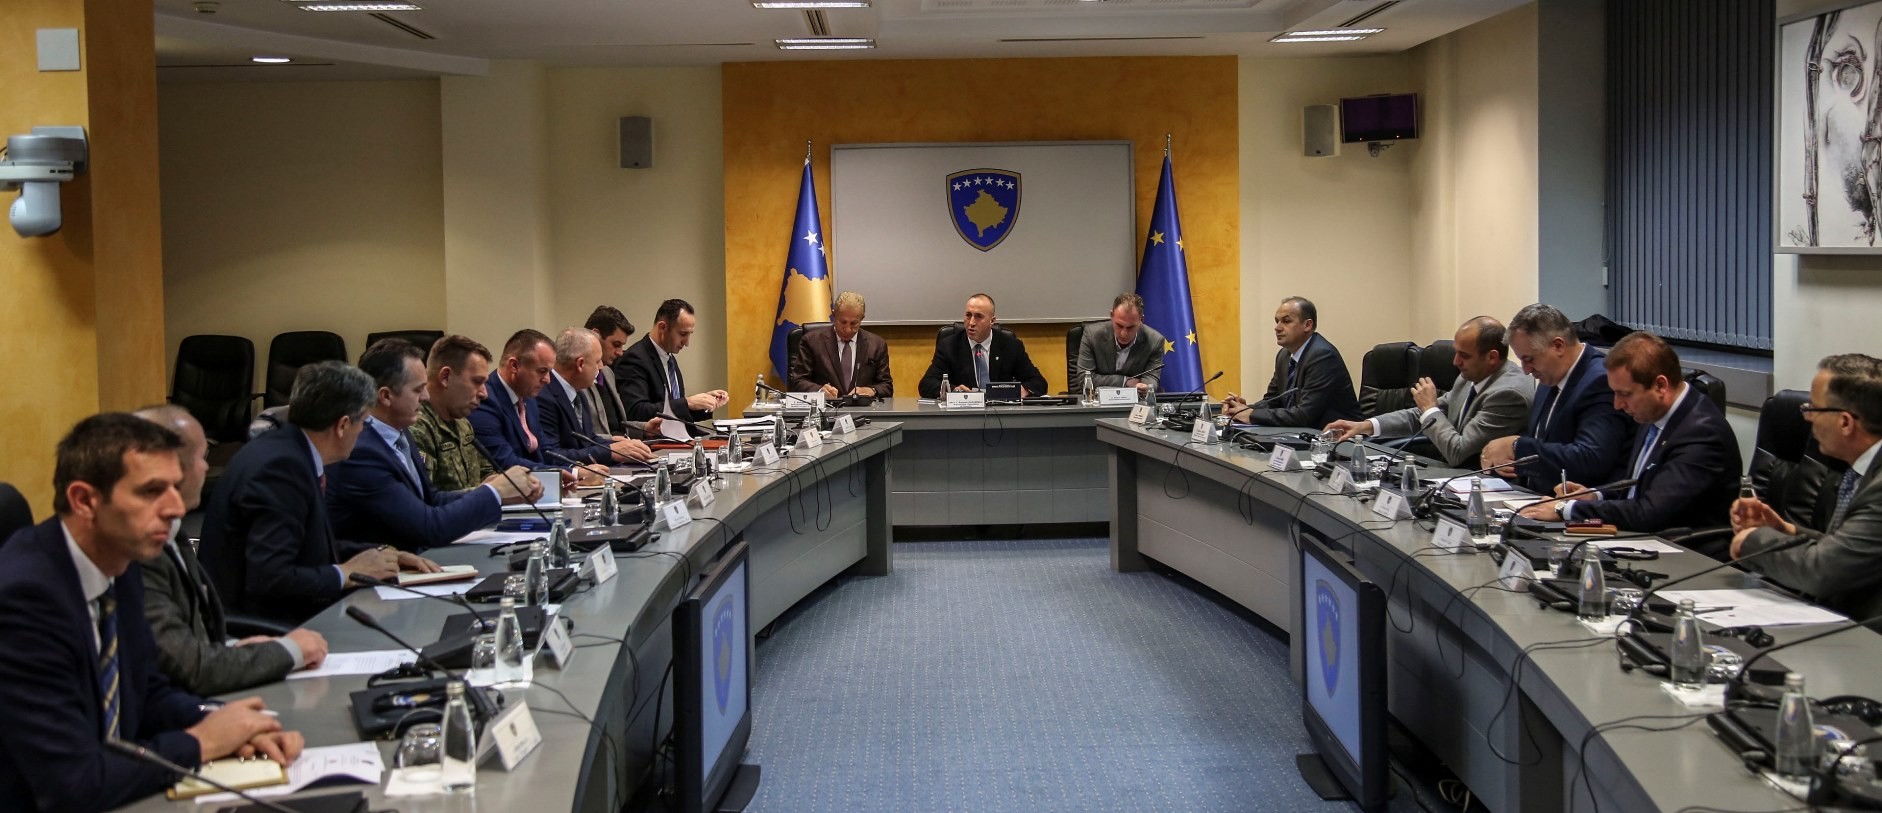 Këshilli i Sigurisë së Kosovës vlerëson të qetë dhe stabile gjendjen në Kosovë